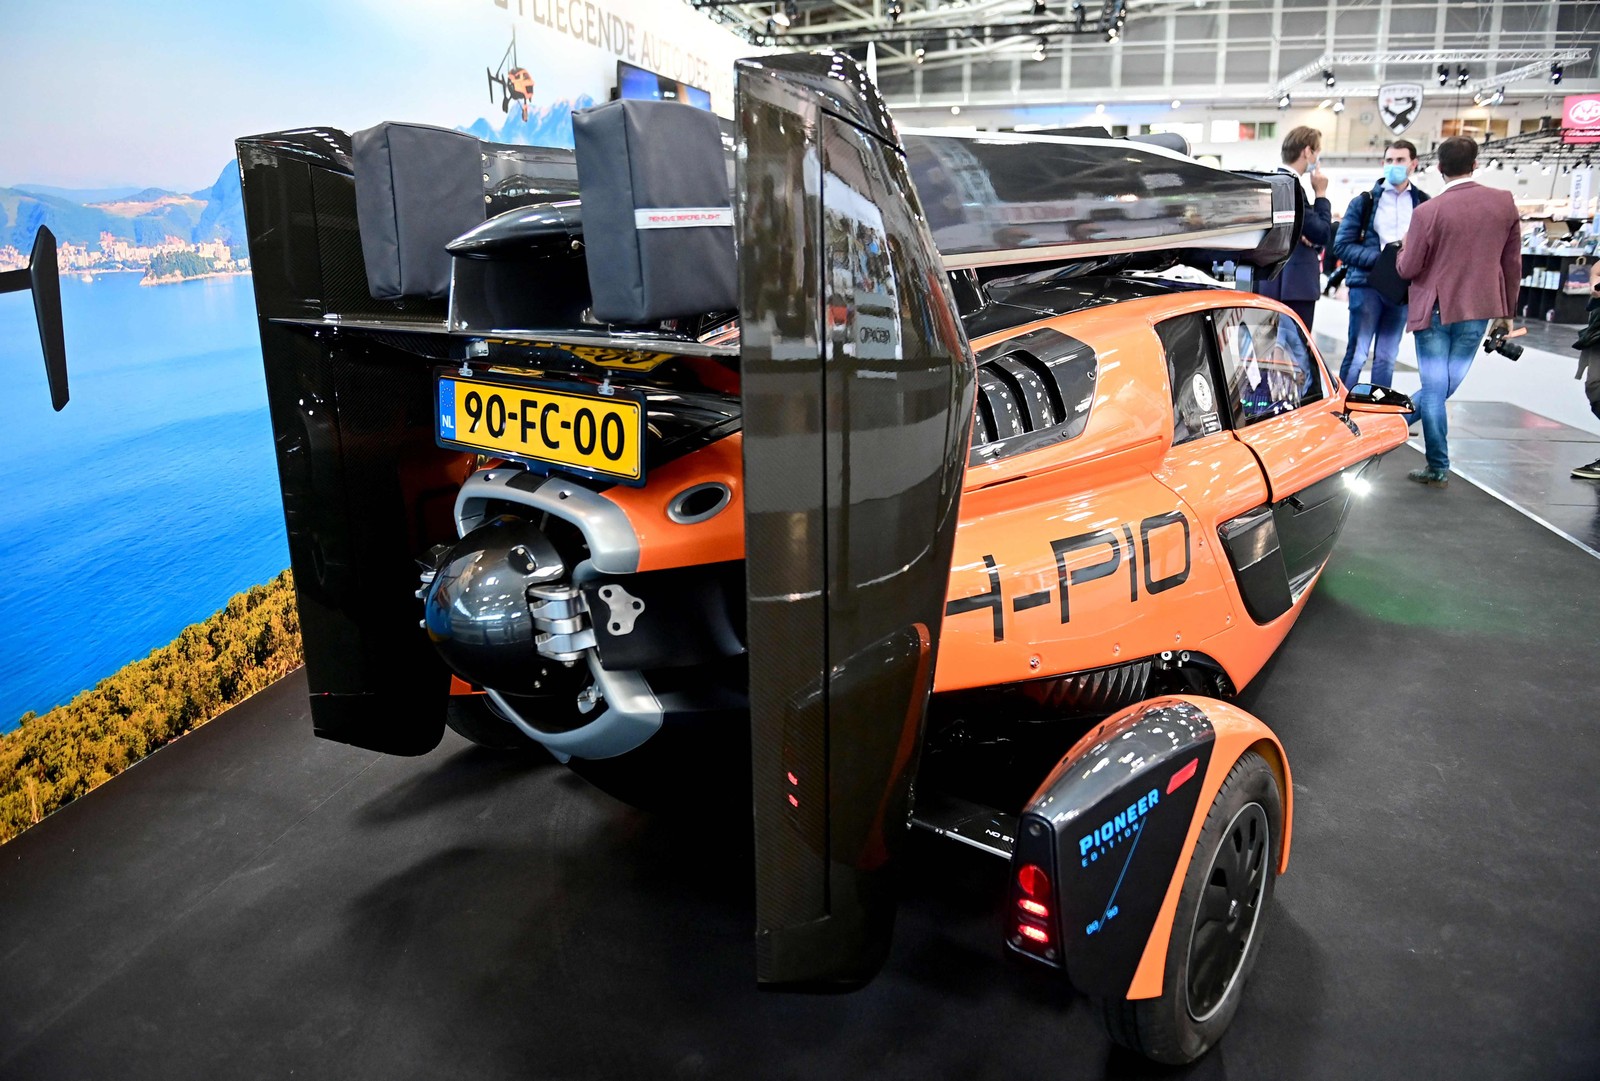 O carro avoador PAL-V foi apresentado na feira de automóveisTOBIAS SCHWARZ/AFP